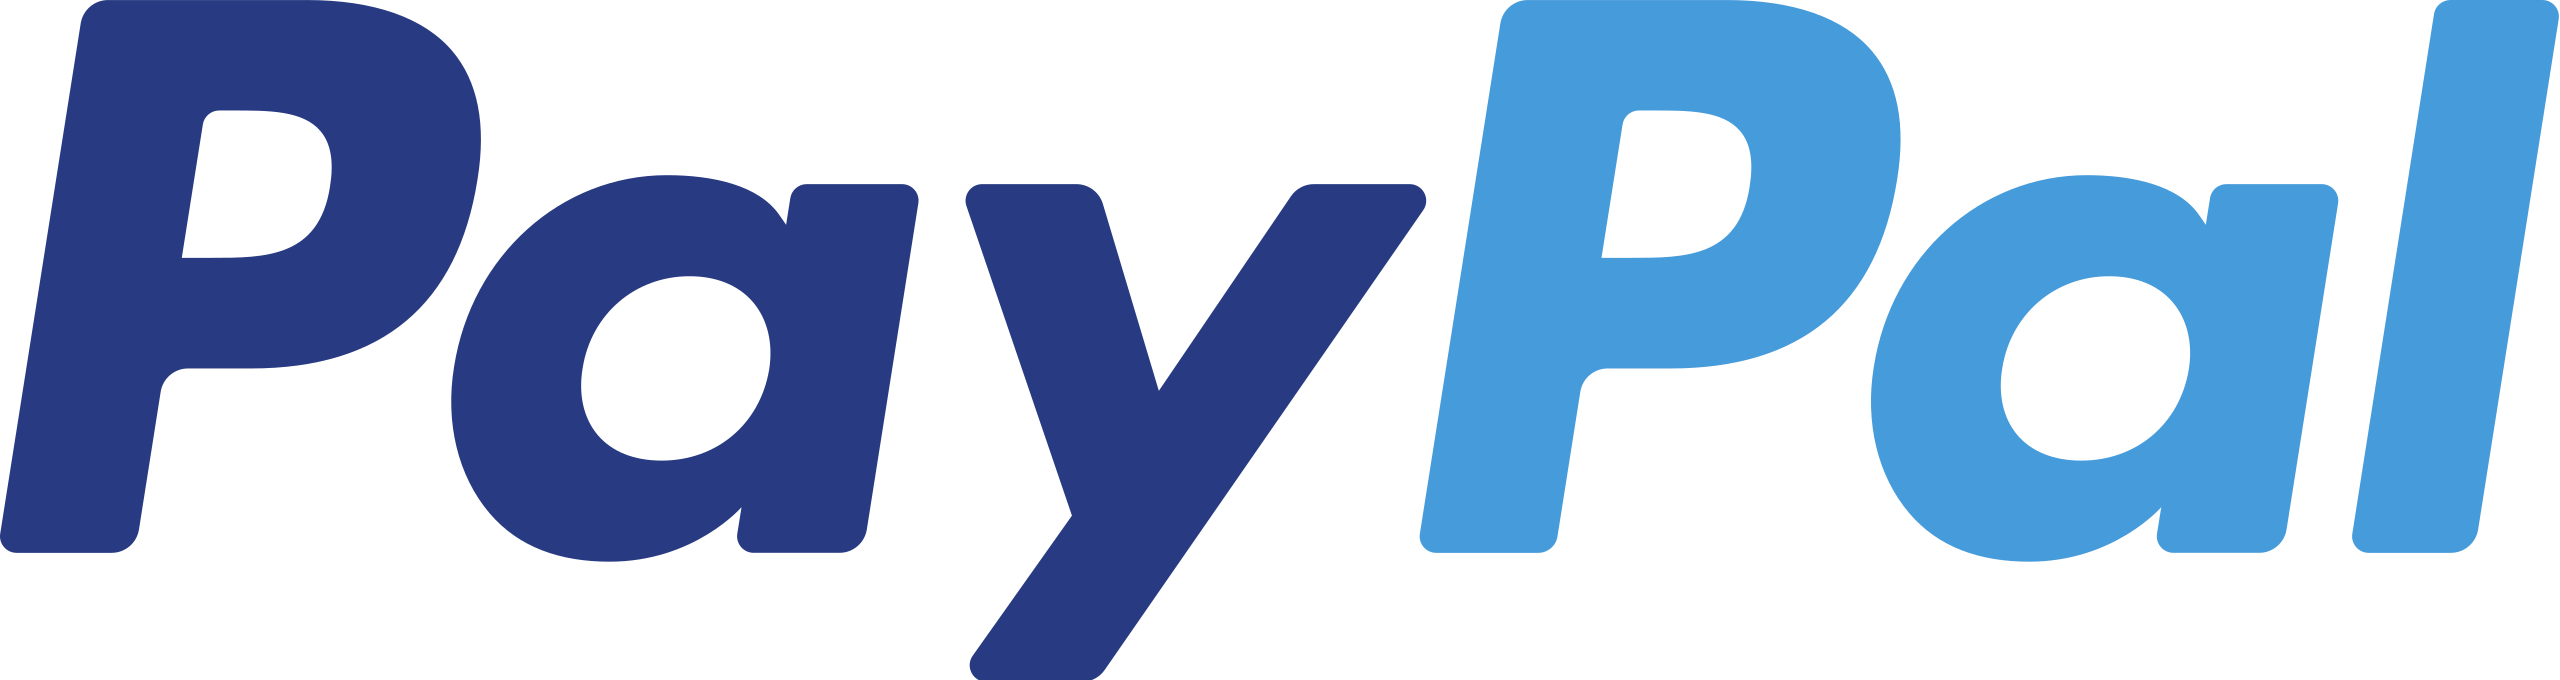 2560px-PayPal_logo